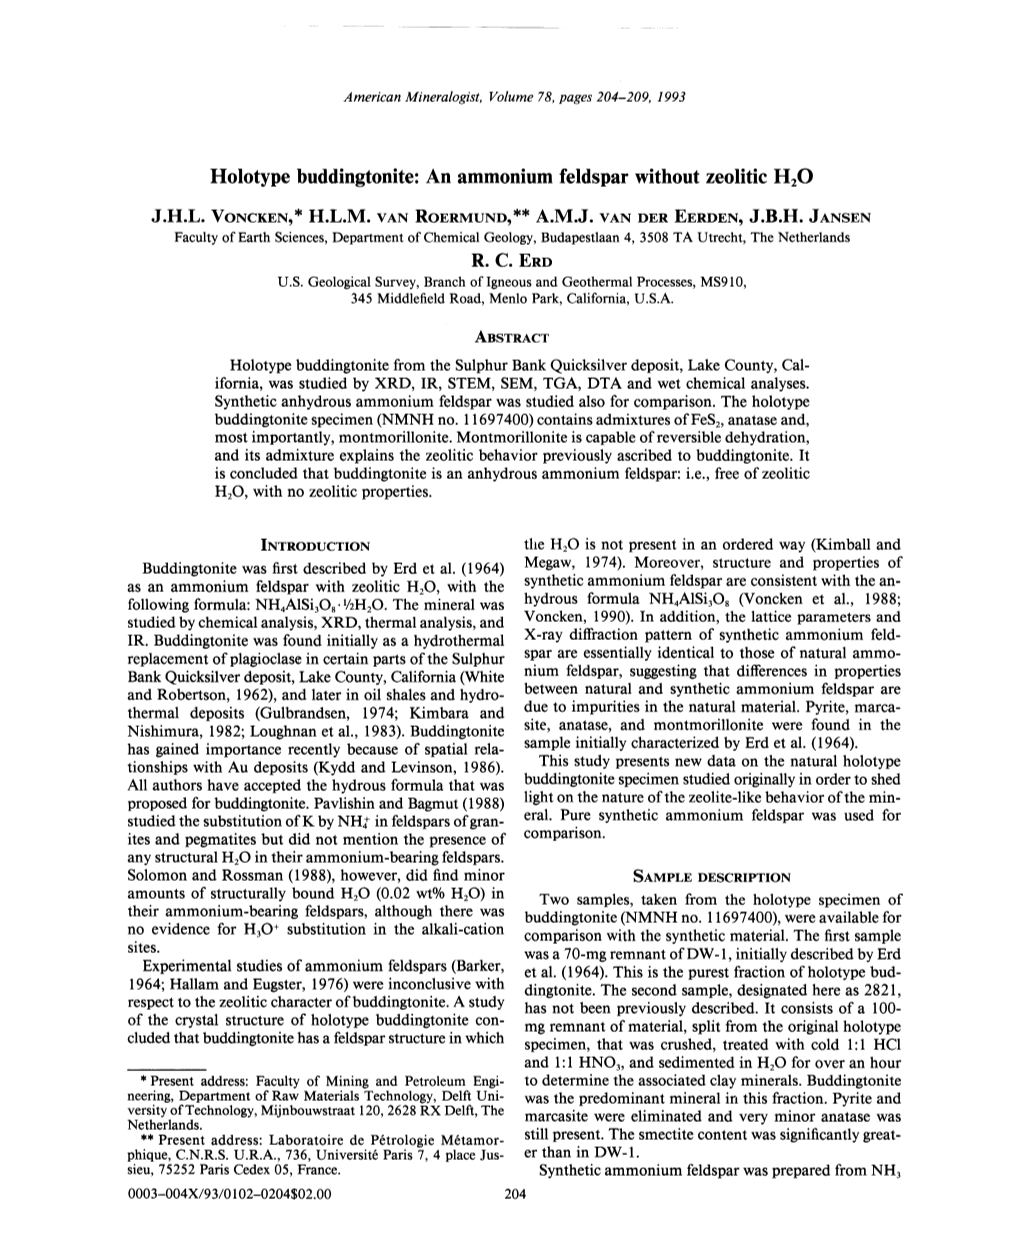 Holotype Buddingtonite: an Ammonium Feldspar Without Zeolitic H20